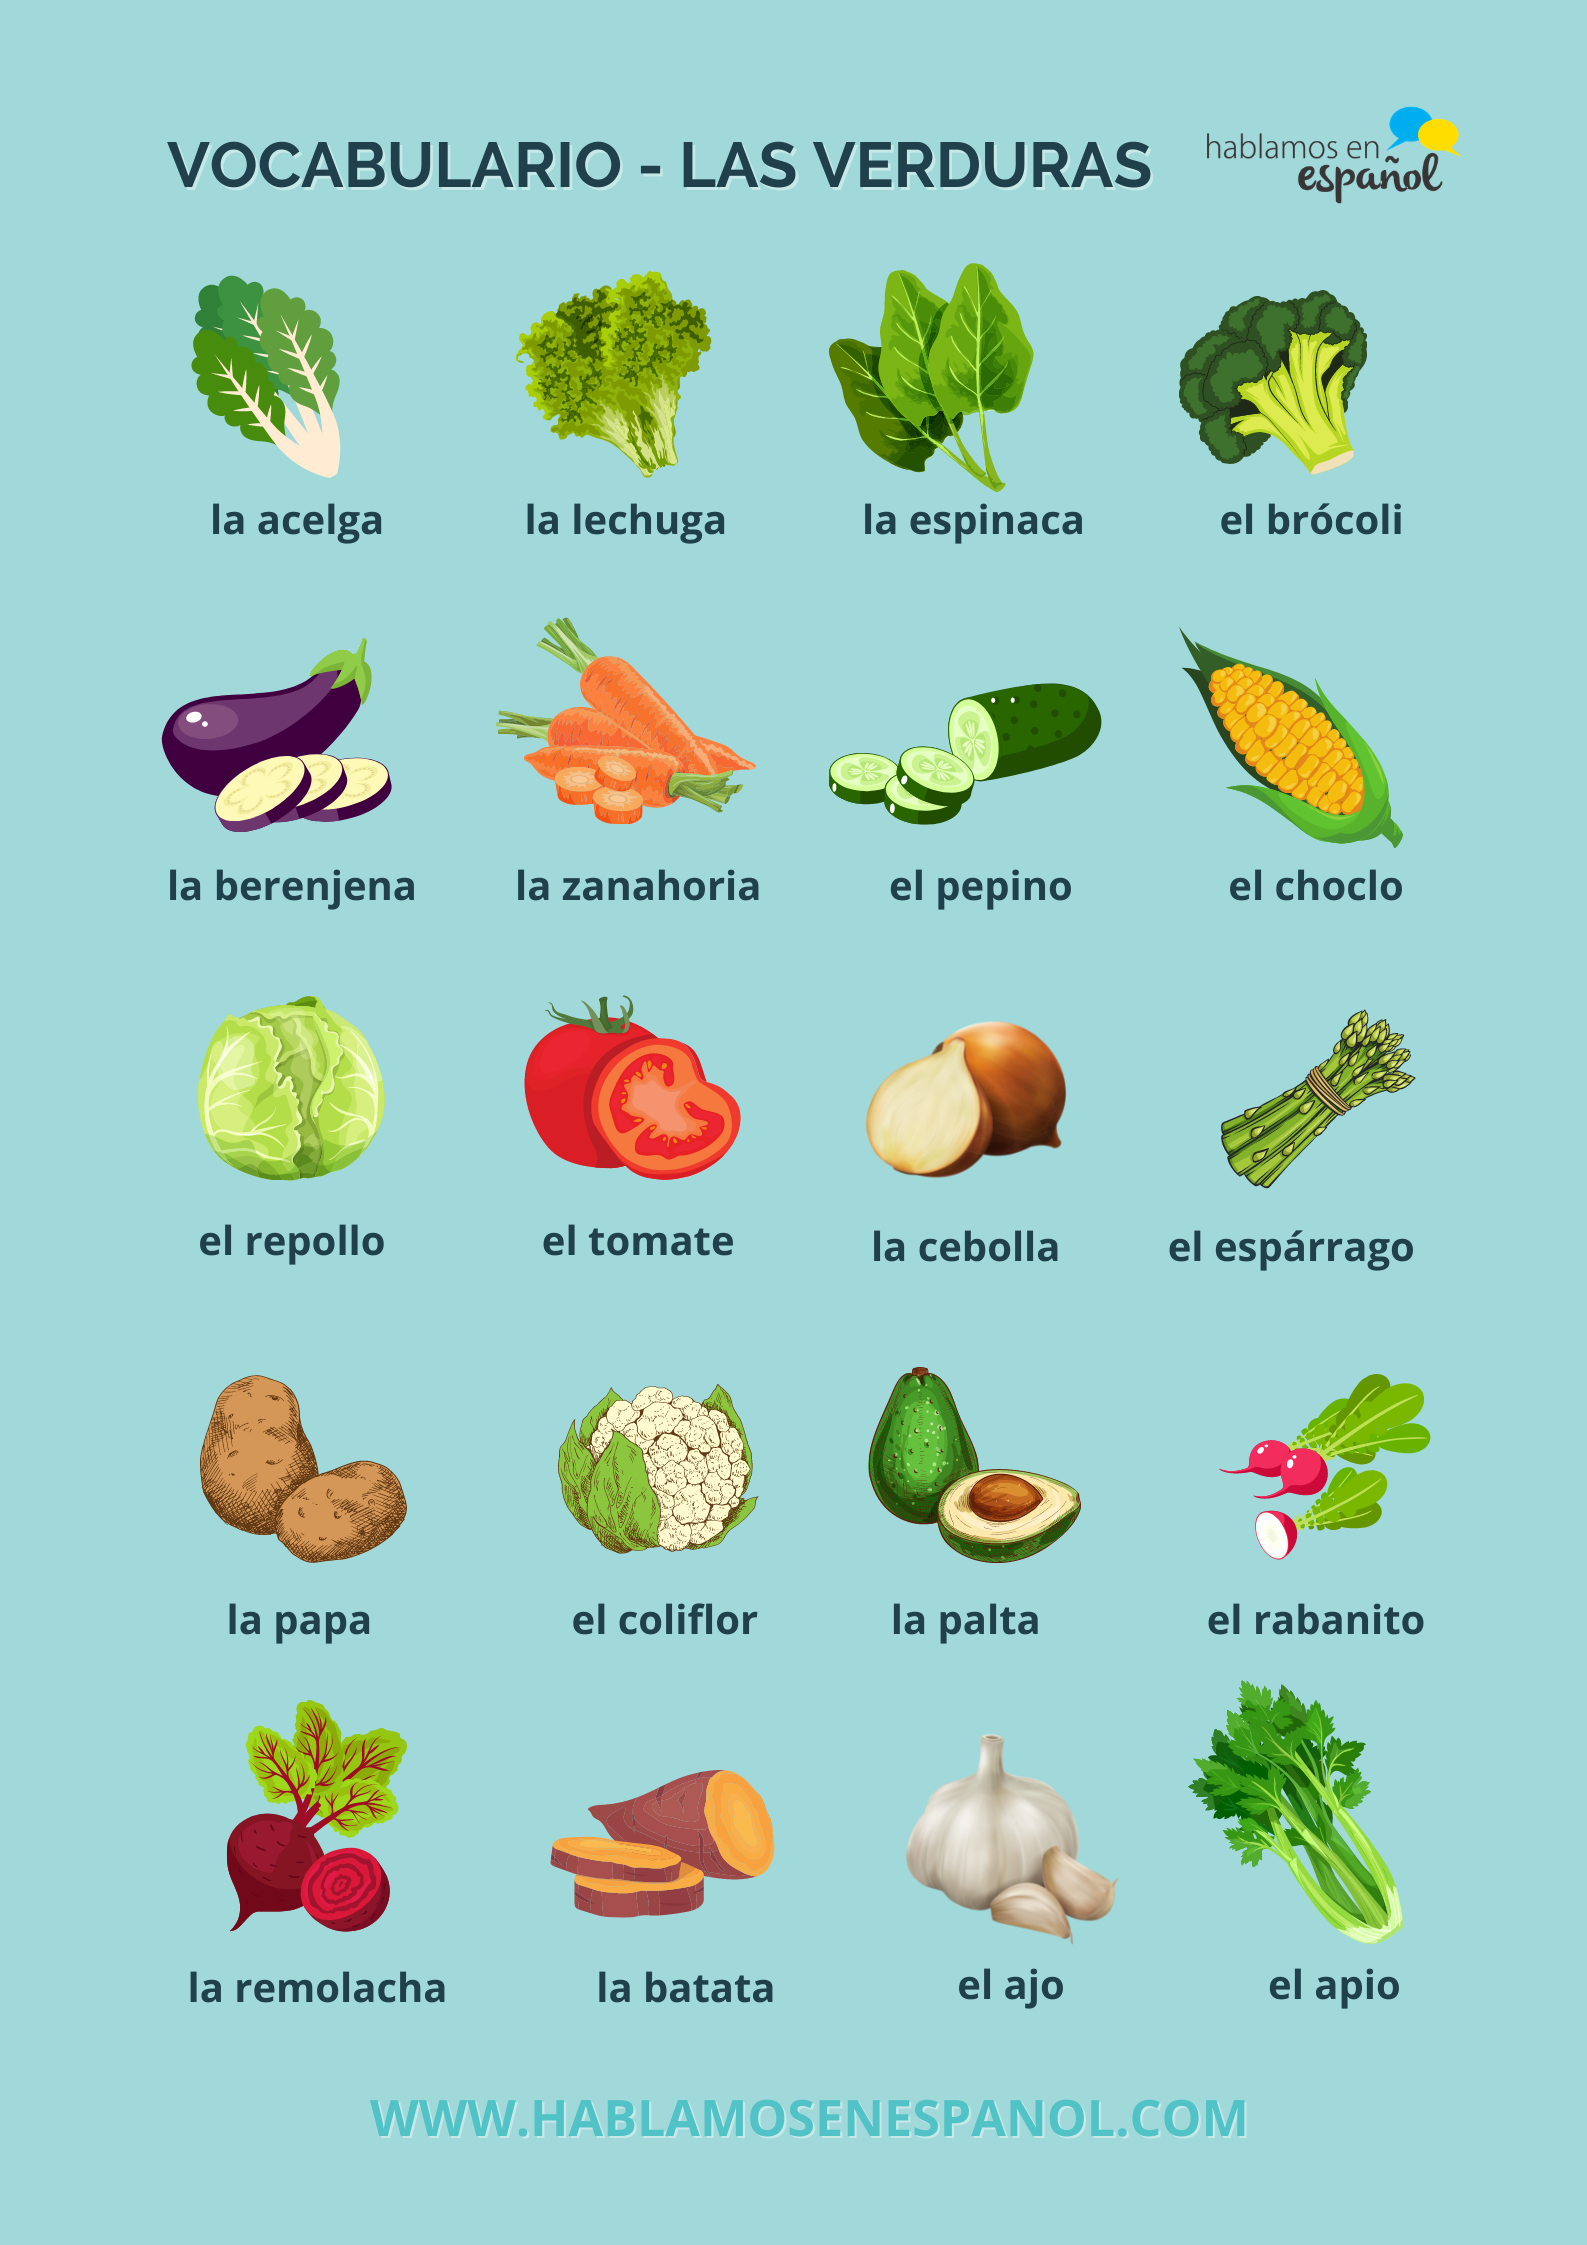 Actividades Para Aprender El Vocabulario De Las Verduras En Español Hablamos En Español 9901